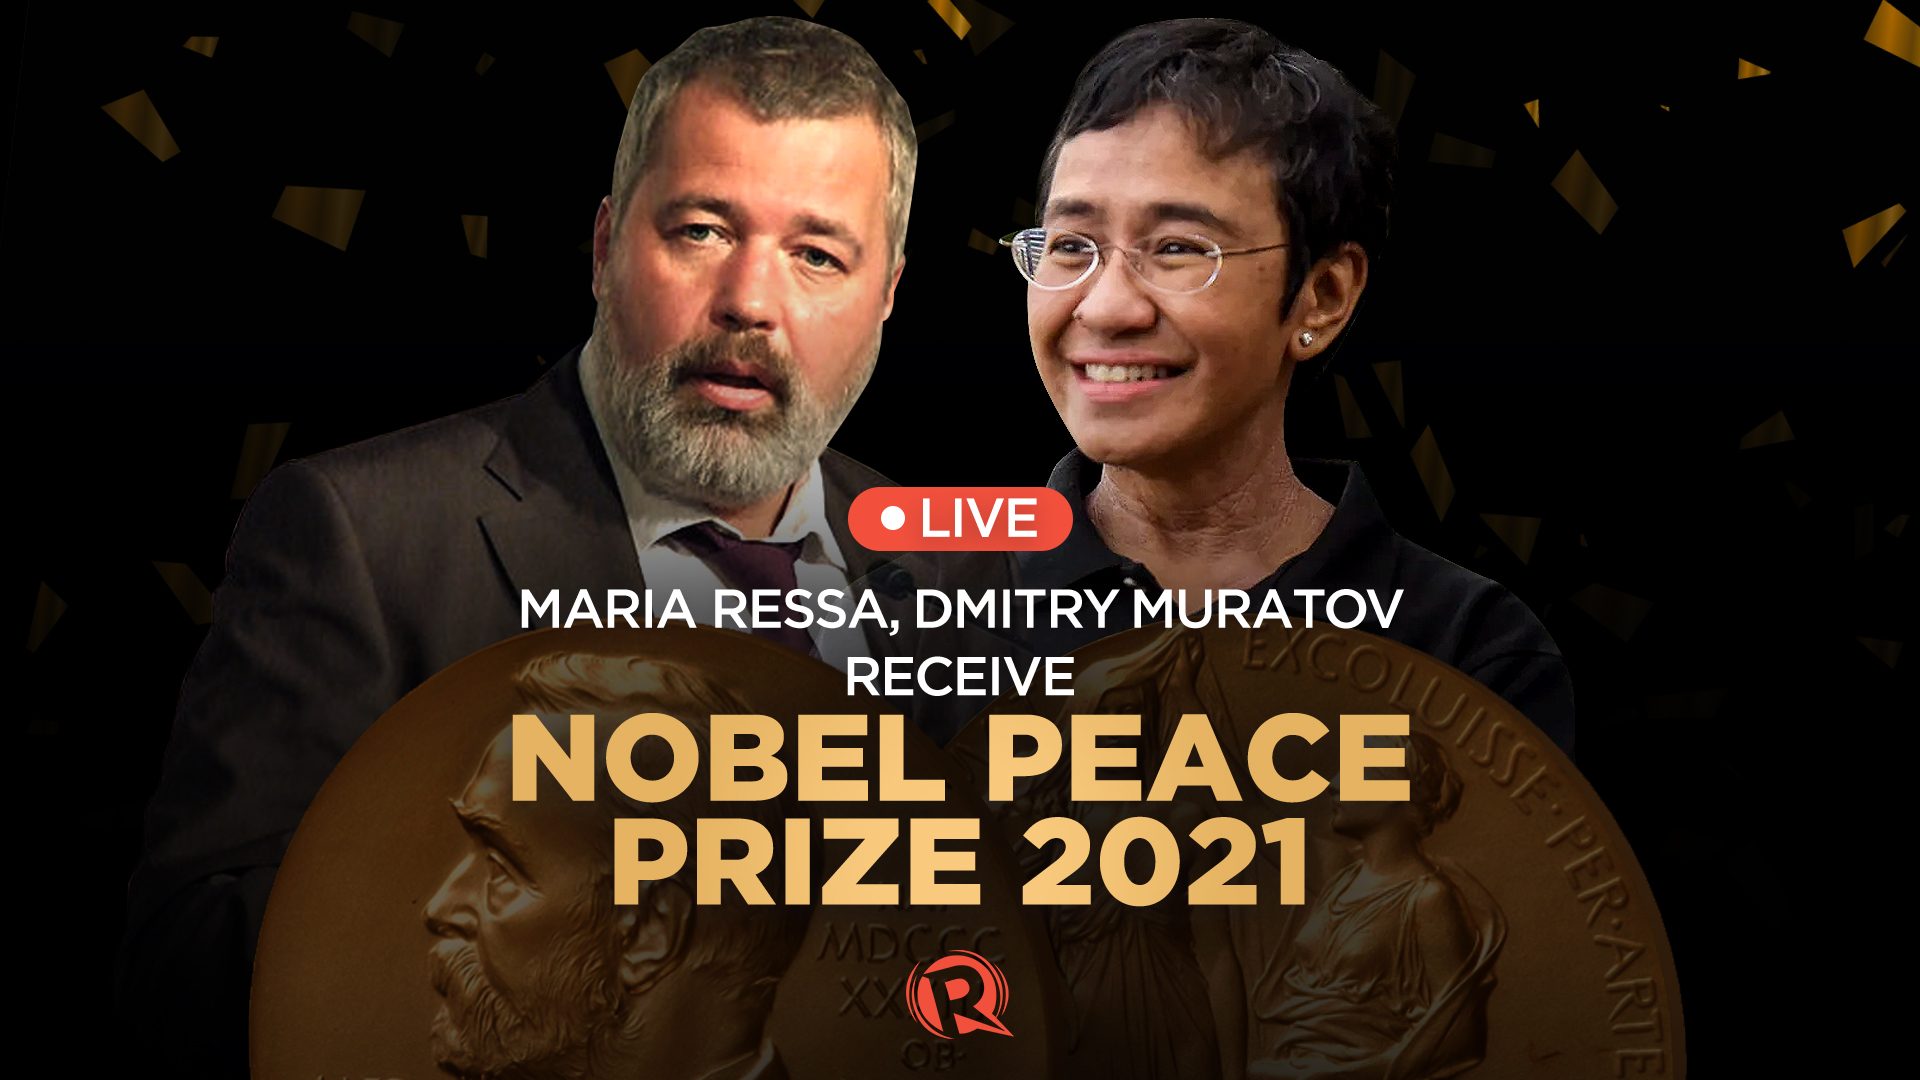 LIVESTREAM: Maria Ressa, Dmitry Muratov receive Nobel Peace Prize in Oslo - Rappler